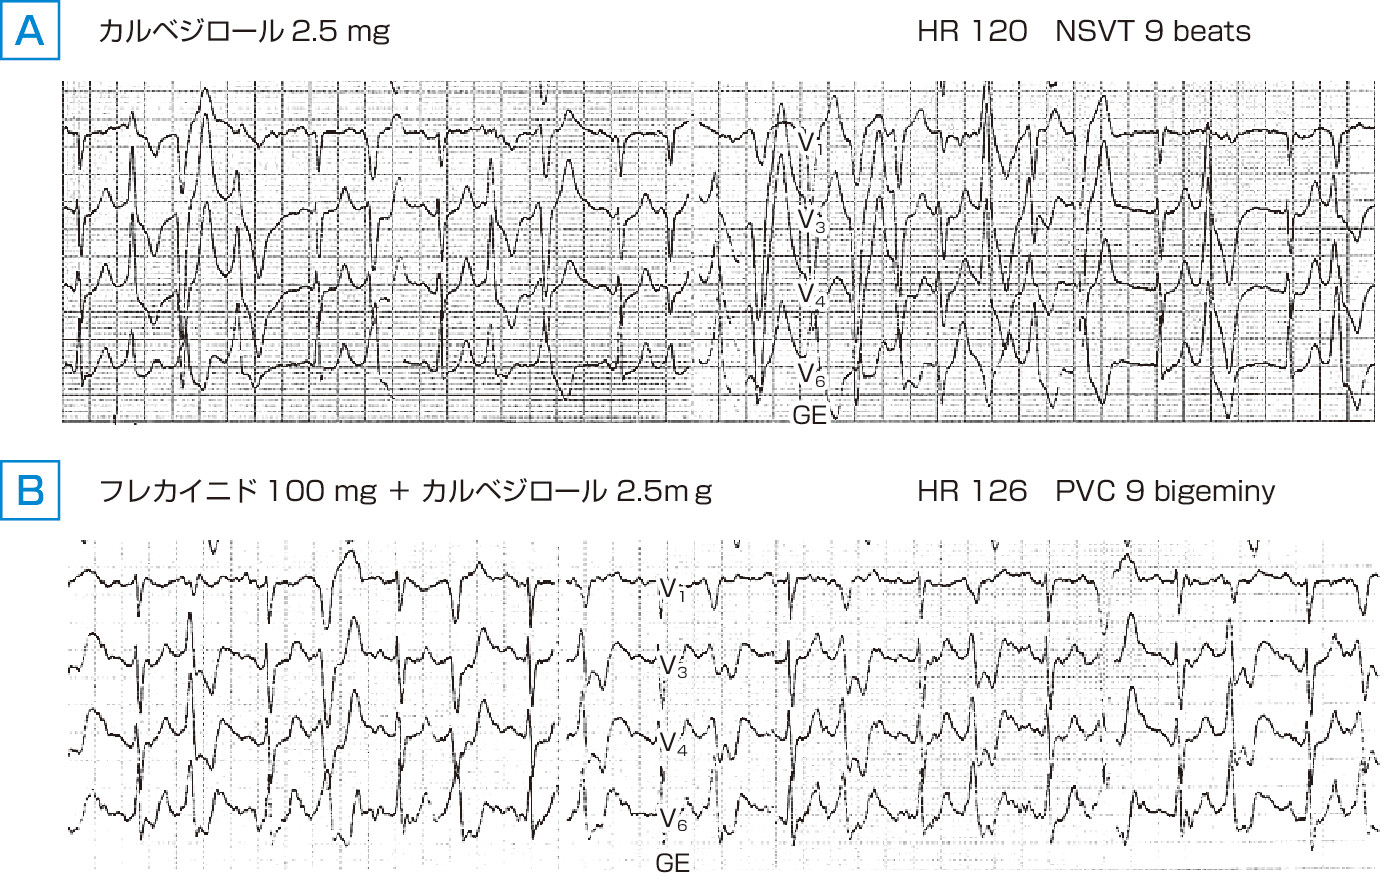 ⓔ図8-4-6　カテコールアミン誘発多形性心室頻拍 (CPVT) 患者に対するフレカイニドの有効性 リアノジン受容体遺伝子 (RyR2) 変異陽性．39歳，女性．β 遮断薬であるカルベジロール2.5 mg/日単独内服中のトレッドミル運動負荷試験では，心拍数が120回/分に上昇した時点で，非持続型心室頻拍 (NSVT) 9連発を認めたが (A)，フレカイニド100 mg/日を併用すると，心拍数が126回/分に上昇した時点でもNSVTは認めず心室期外収縮の二段脈 (PVC bigeminy) までとなった (B)．